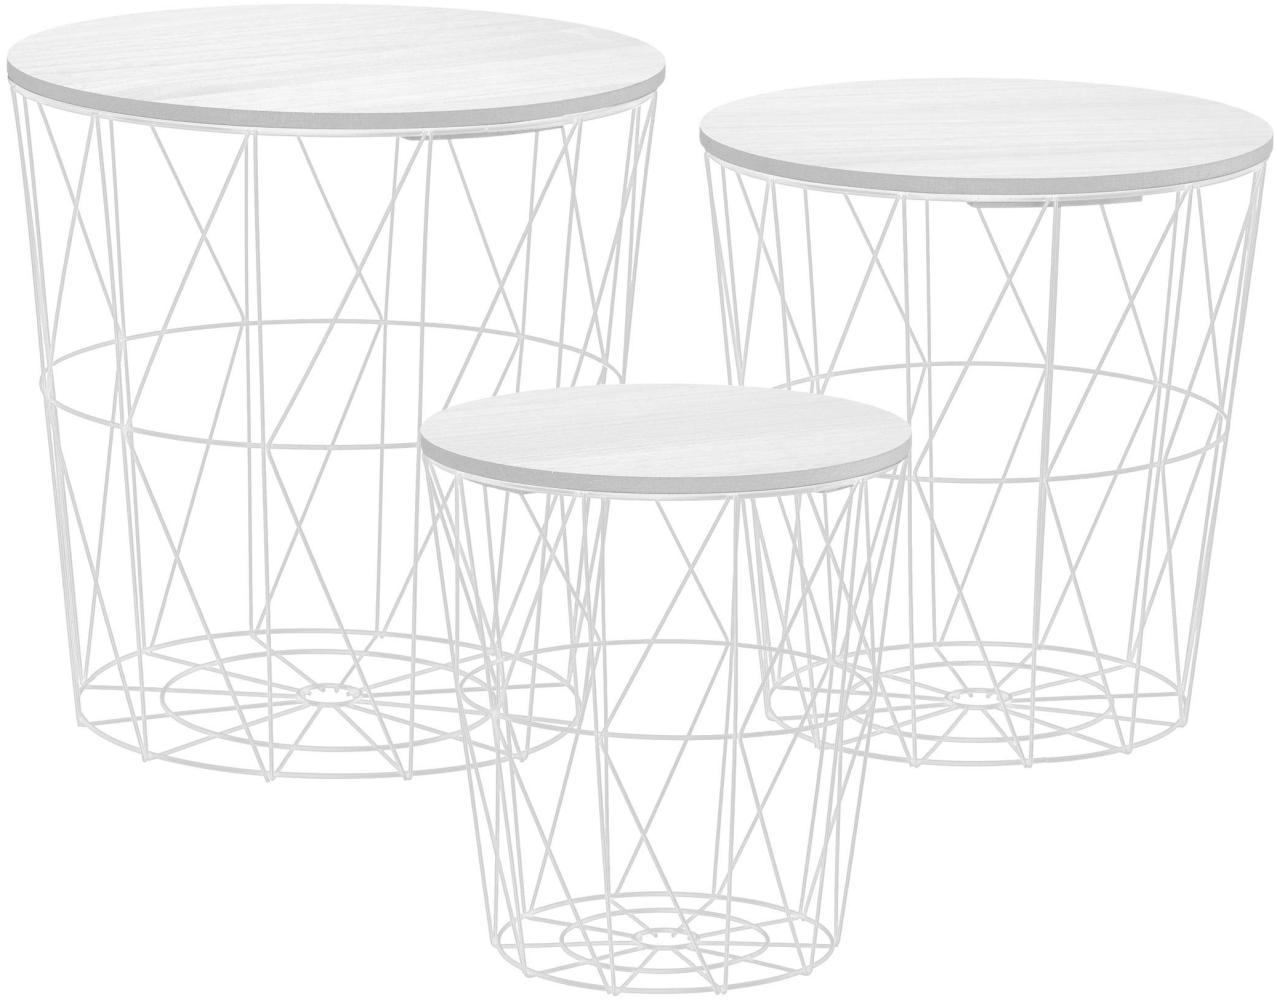 Metall Beistelltisch mit Stauraum weiß - 3er Set - Wohnzimmer Tisch mit Abnehmbarer Holz Platte Metallkorb Sofatisch Couchtisch Bild 1